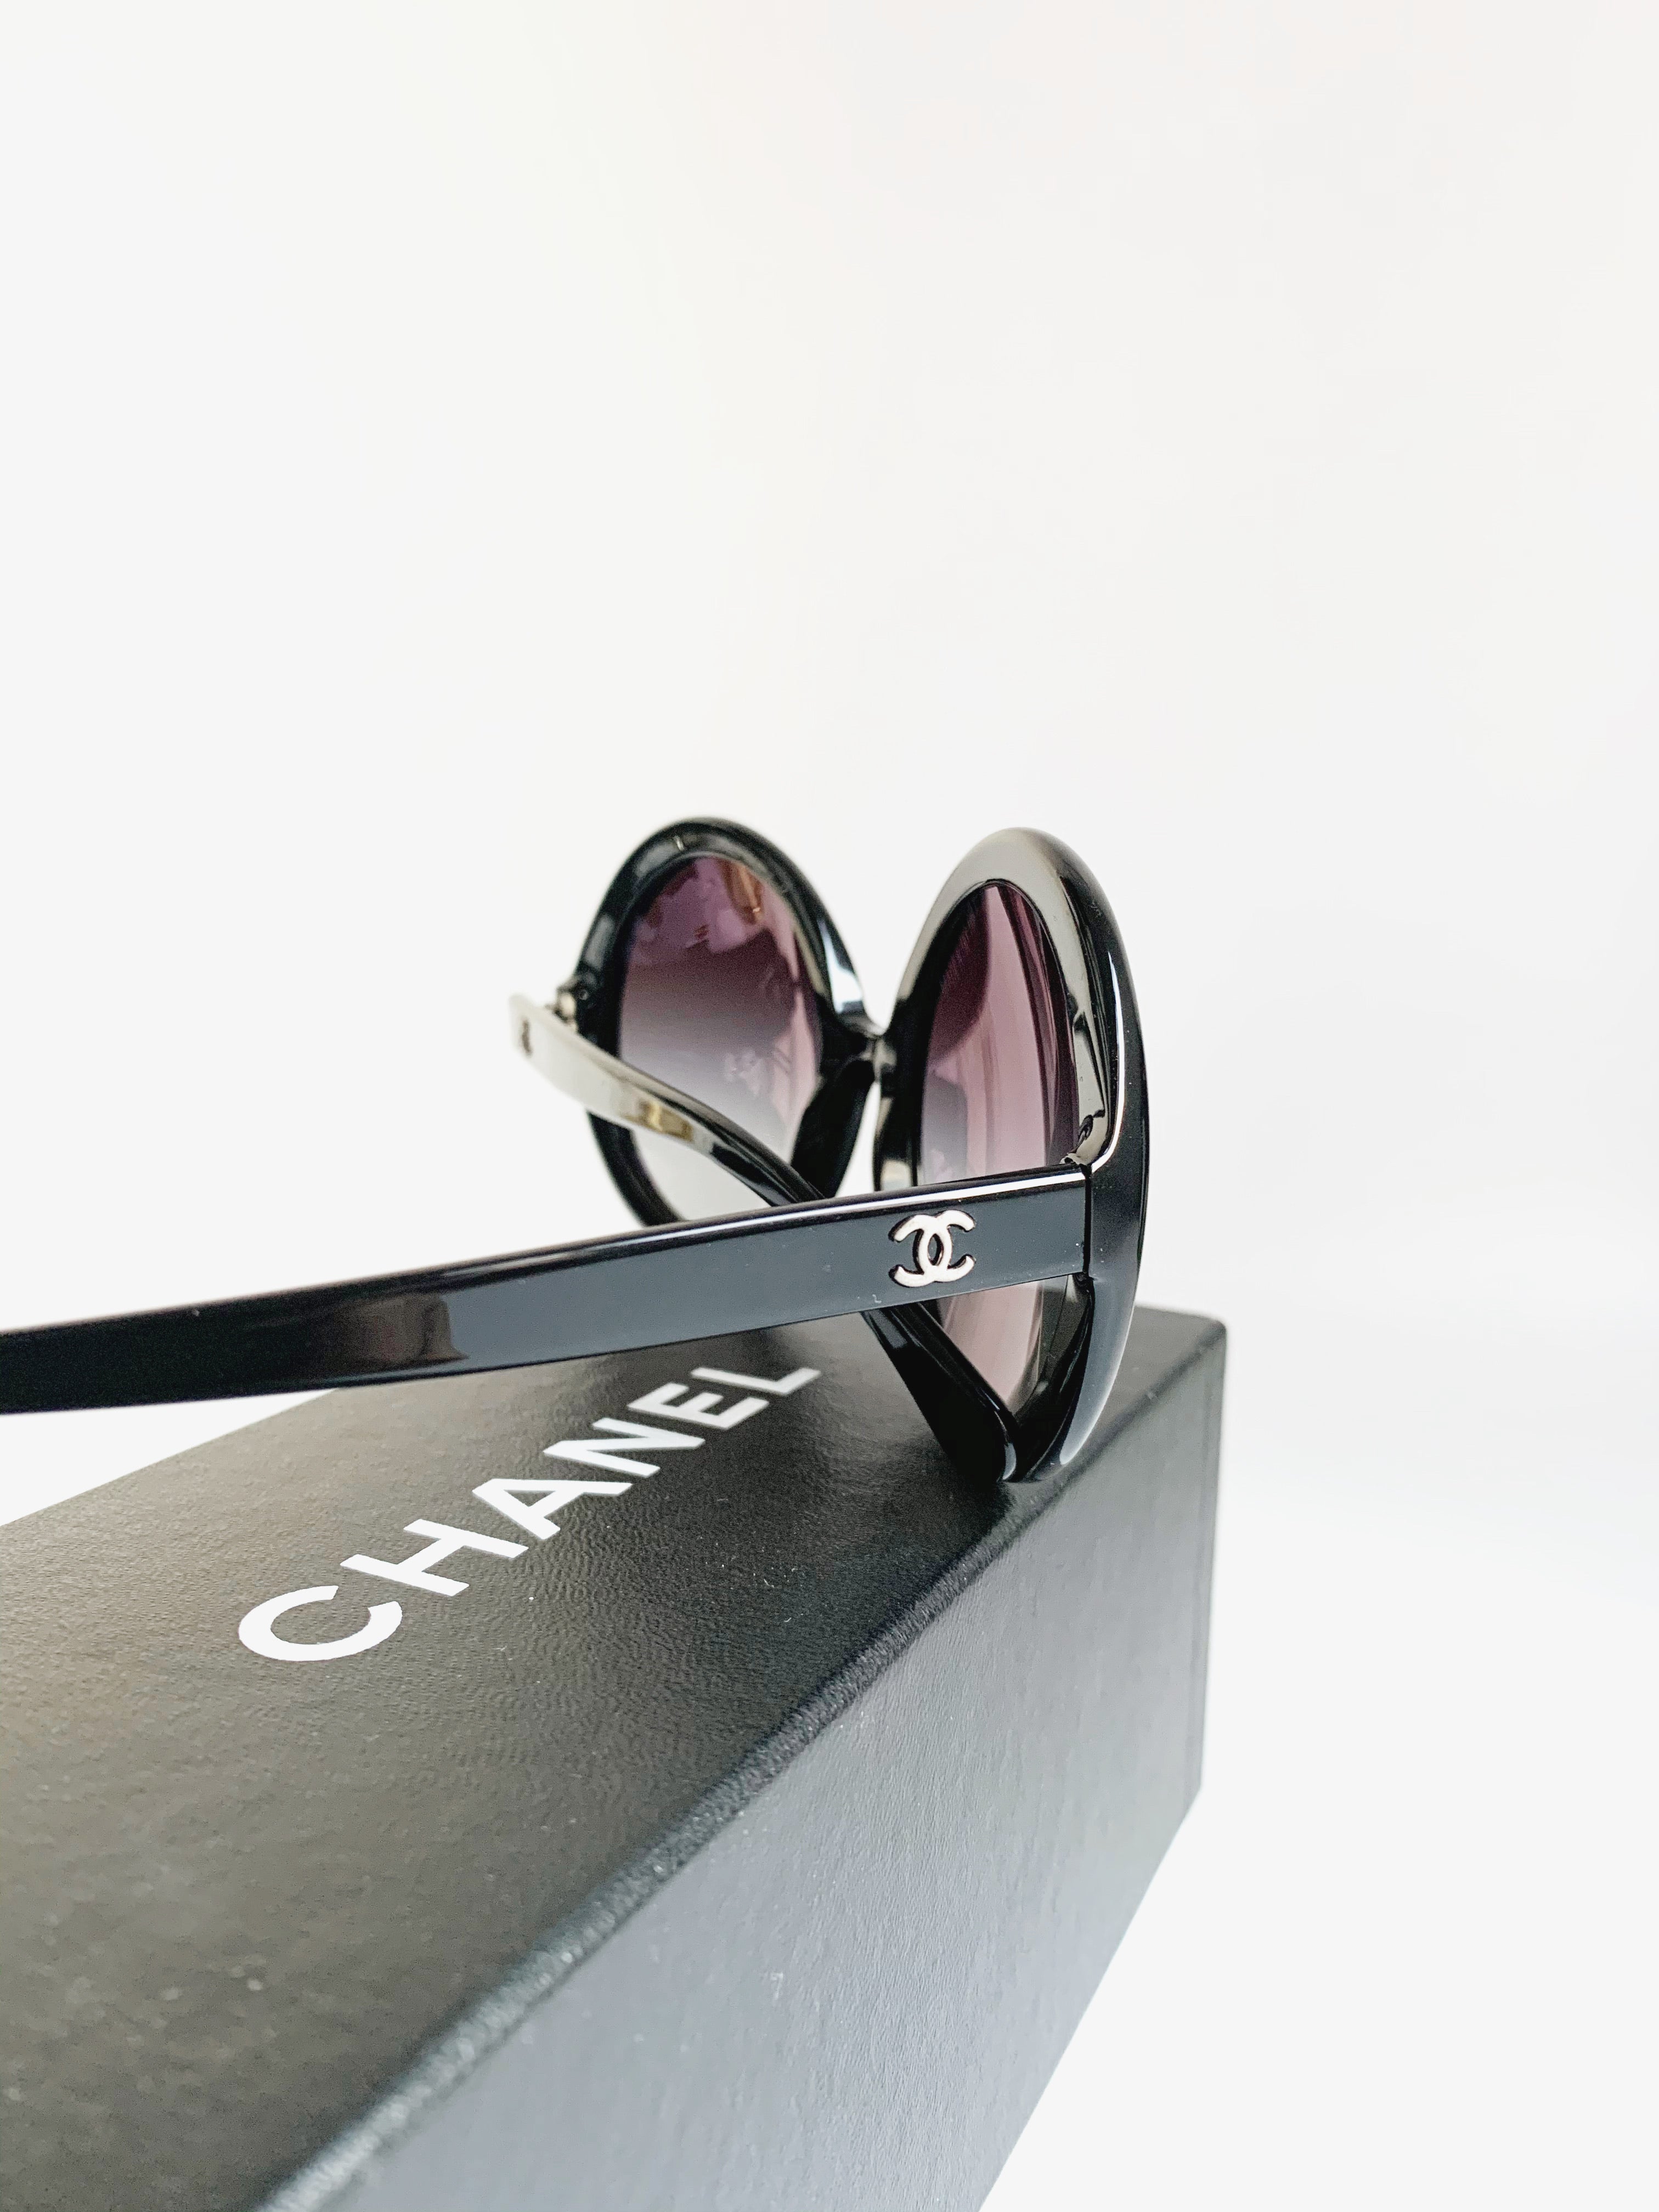 Chanel Round Sunglasses Black – Coco Approved Studio